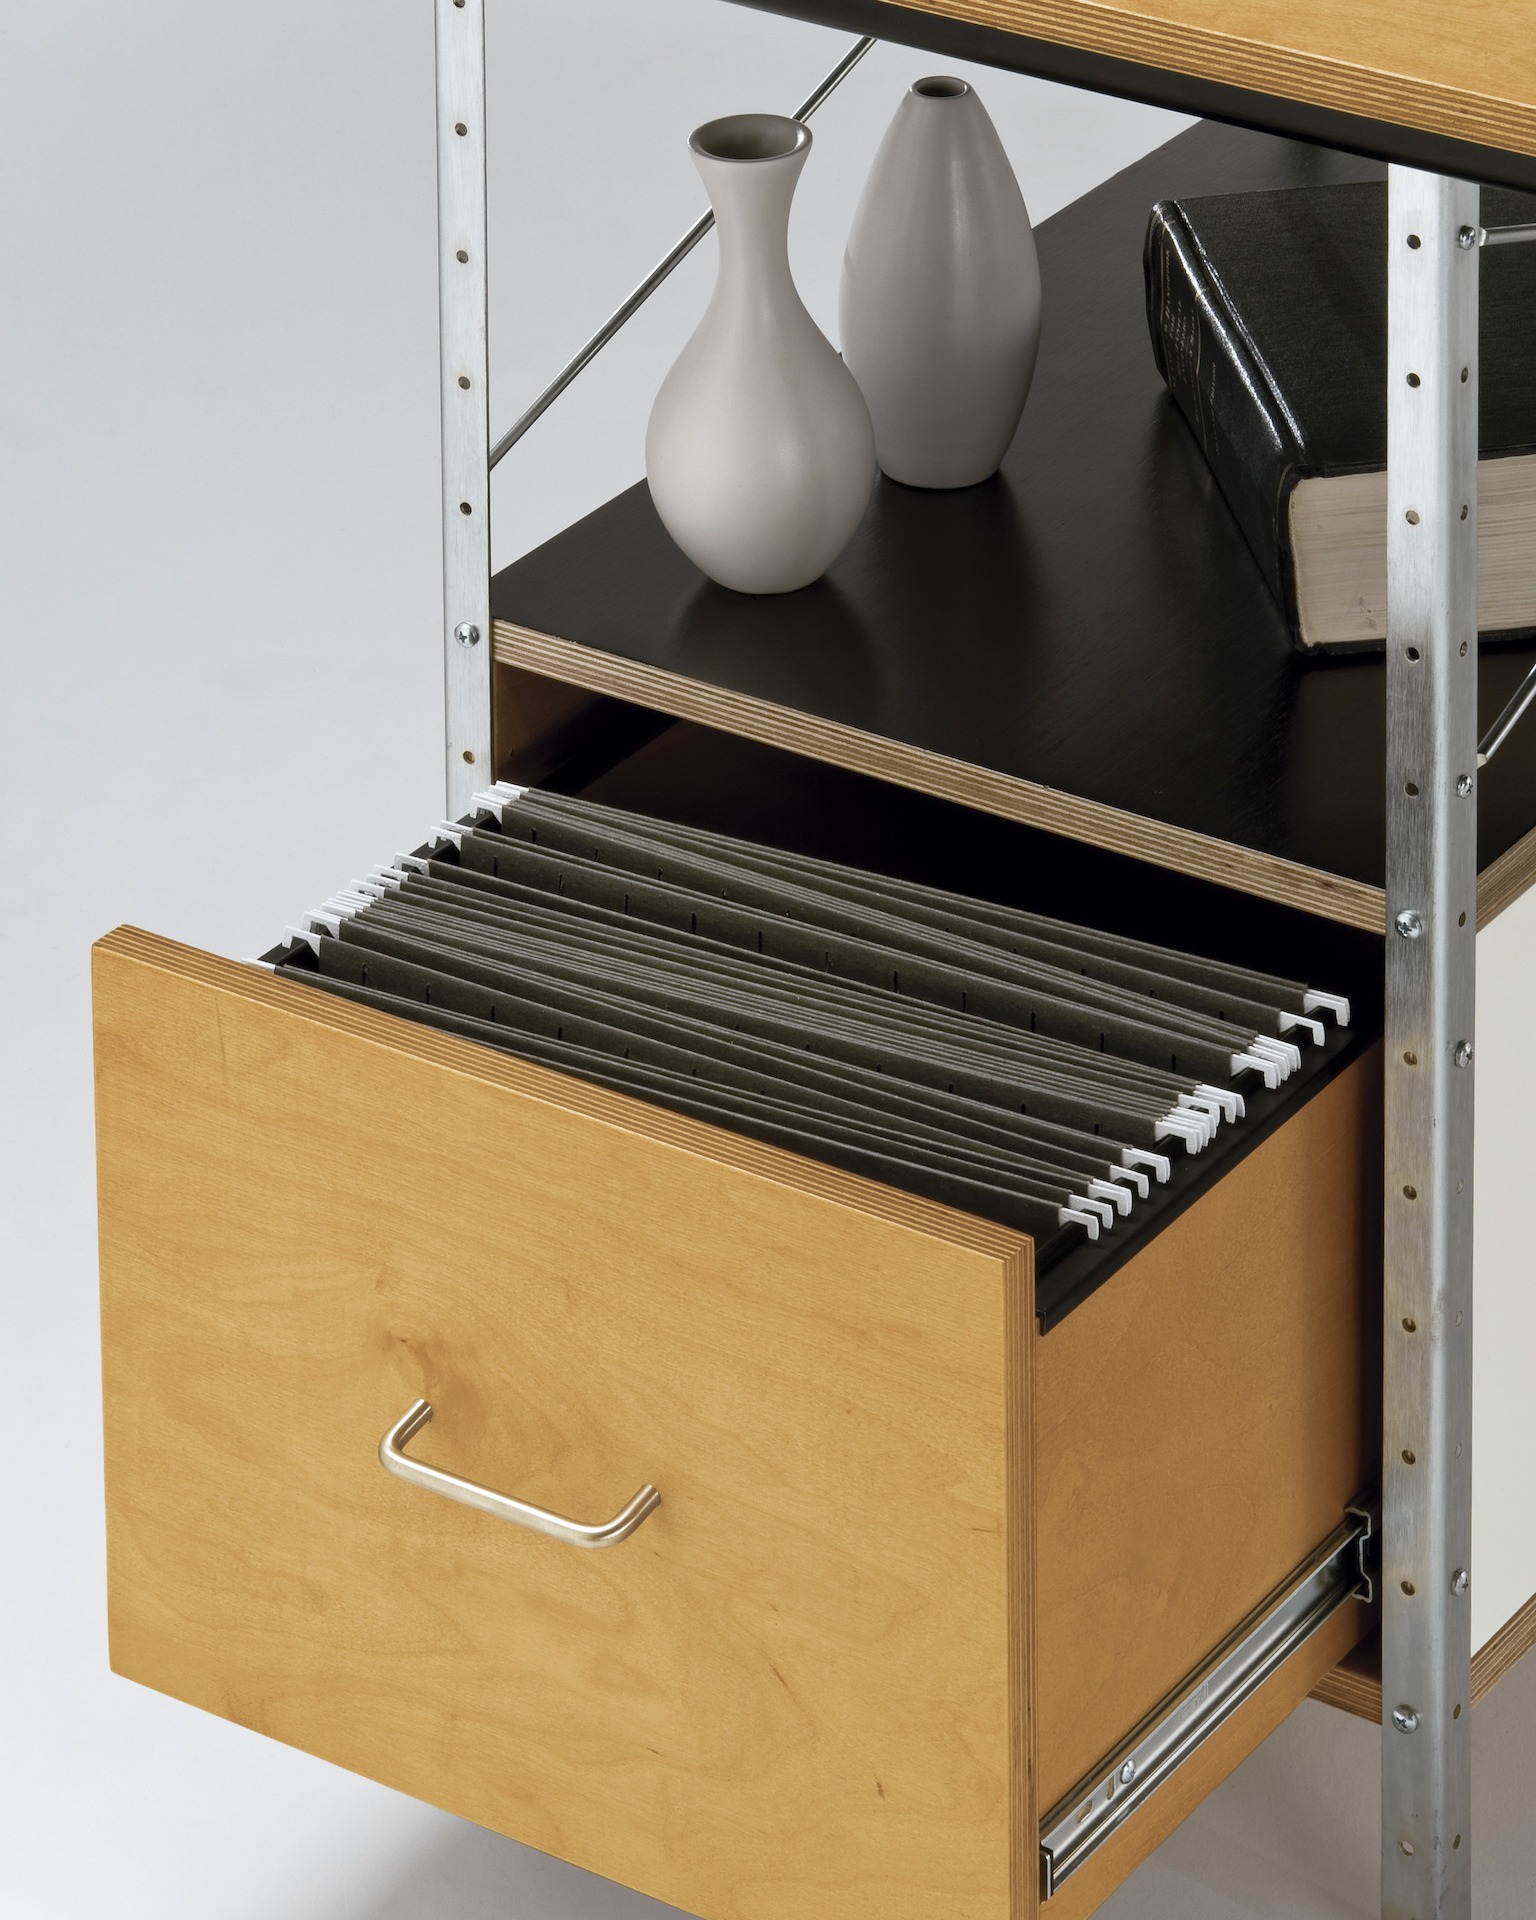 Eames Desk, File Drawer